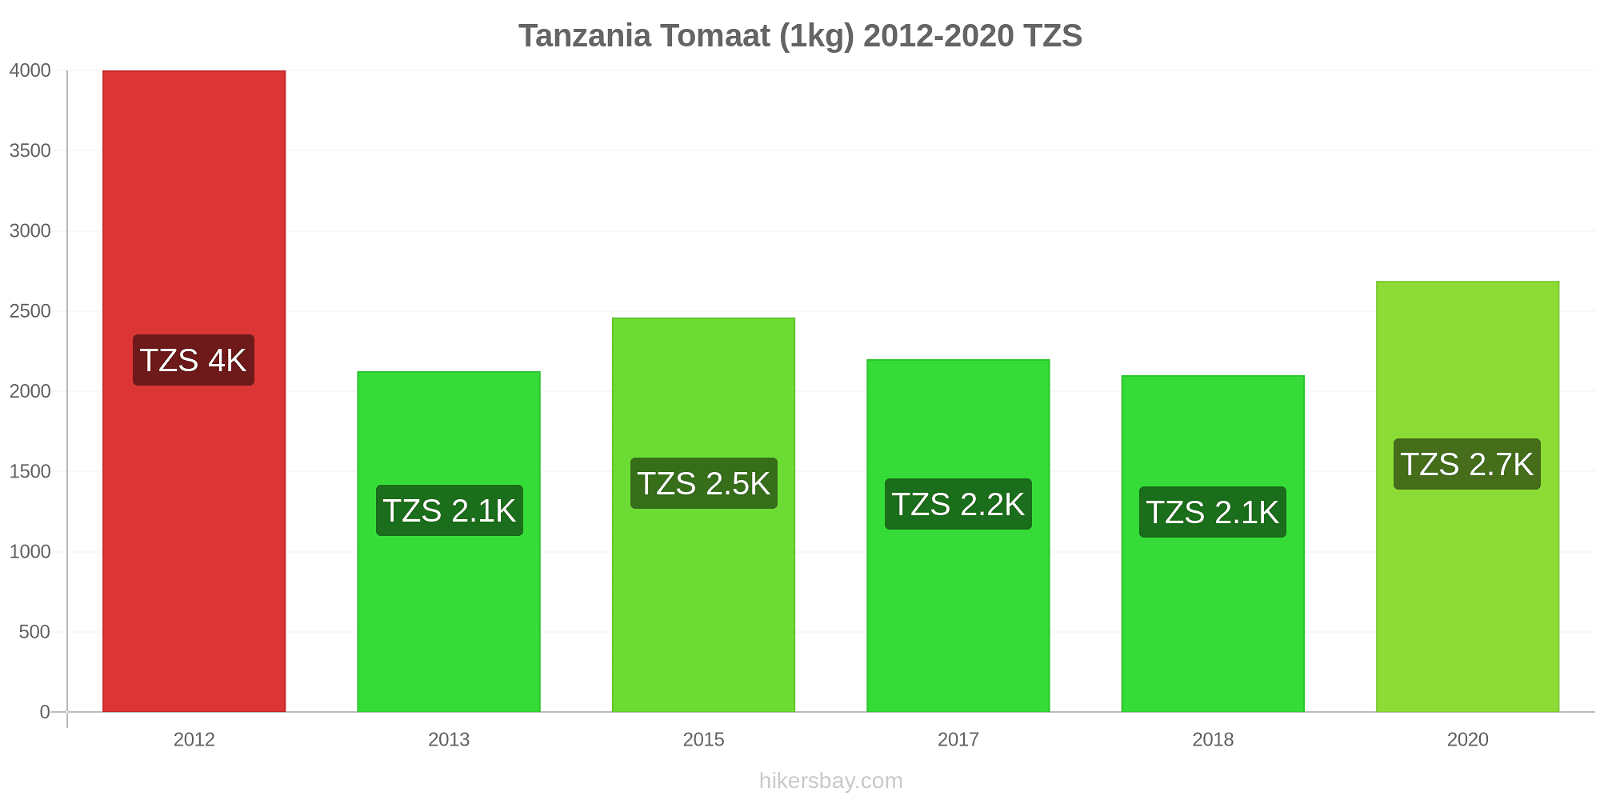 Tanzania prijswijzigingen Tomaat (1kg) hikersbay.com